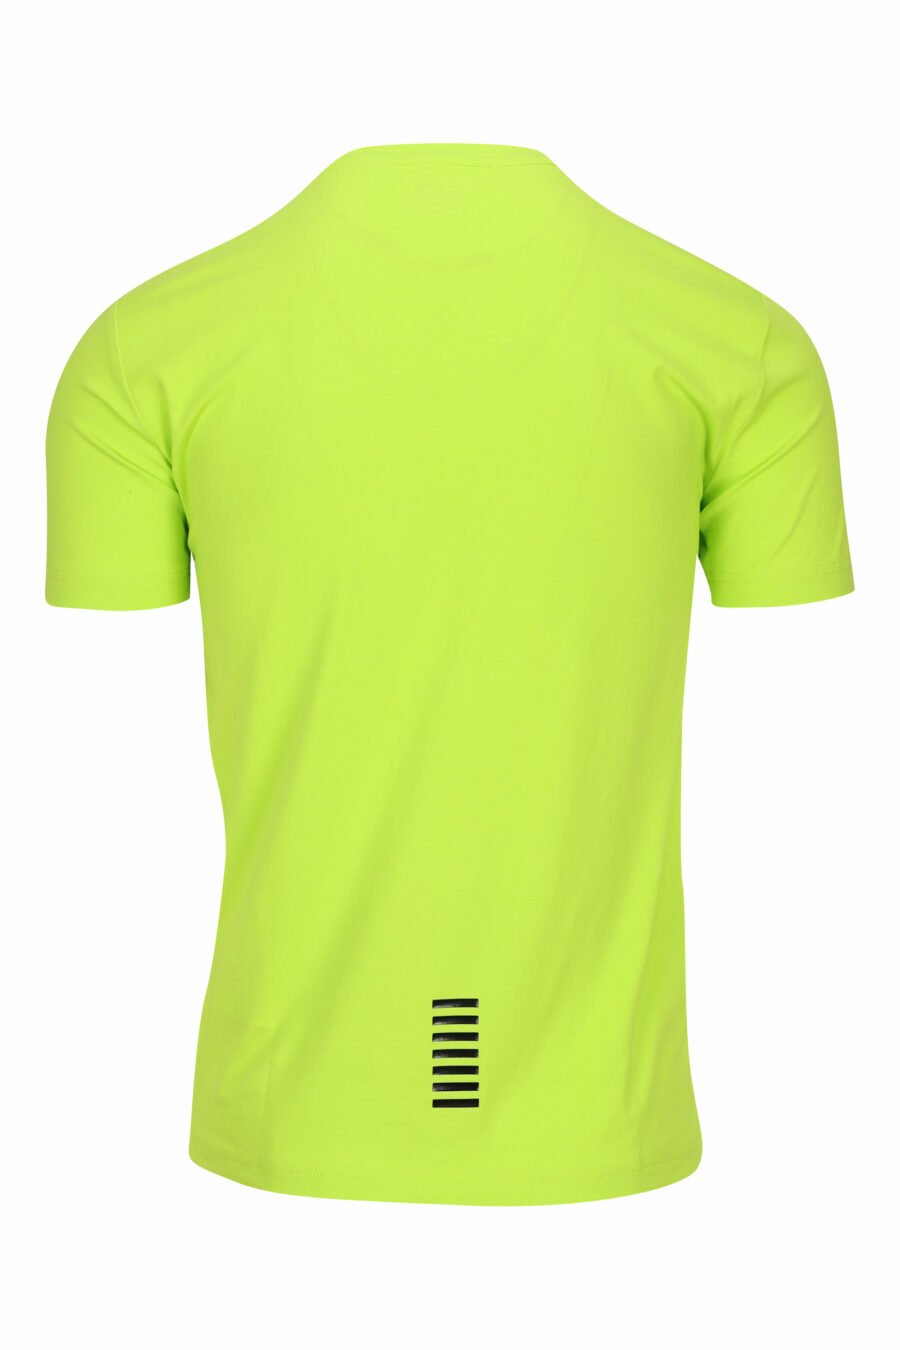 Camiseta verde lima con minilogo "lux identity" de goma - 8058947458301 1